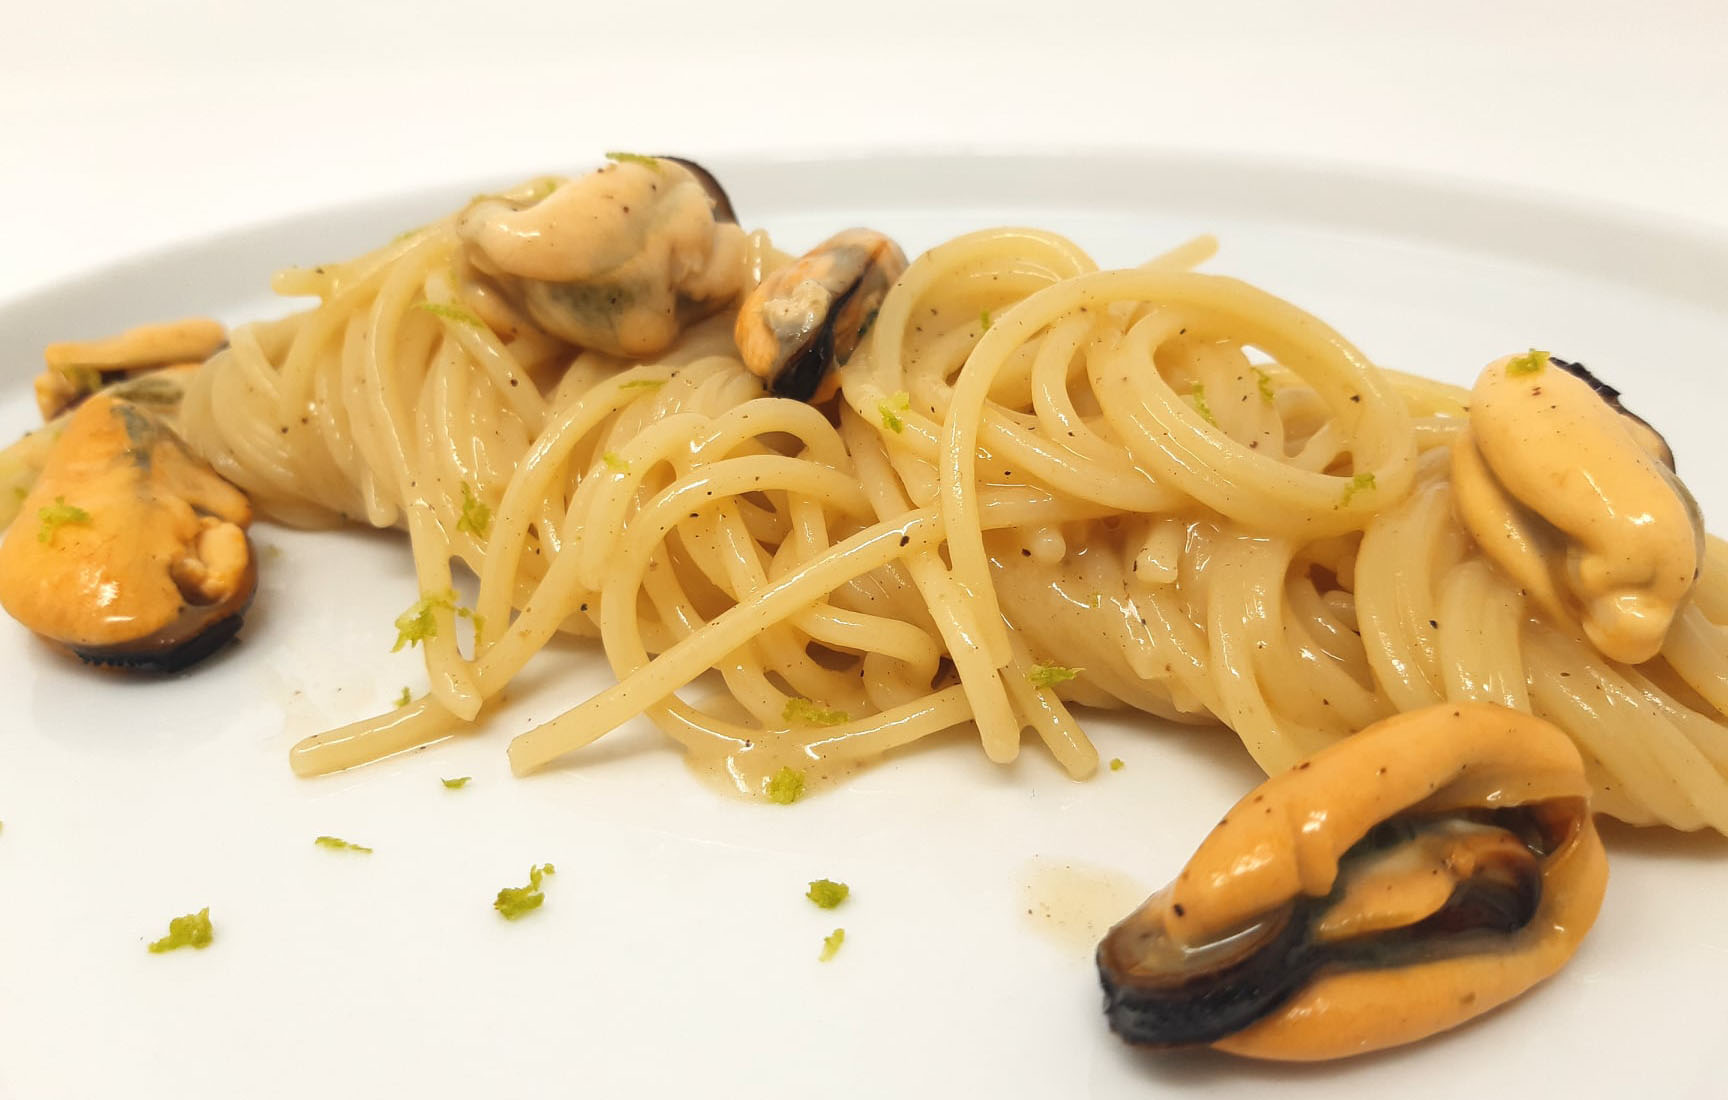 spaghetti-all’impepata-di-cozze,-al-posto-della-zuppa.-l’antica-ricetta-napoletana-piu-buona-e-cremosa-delle-vongole